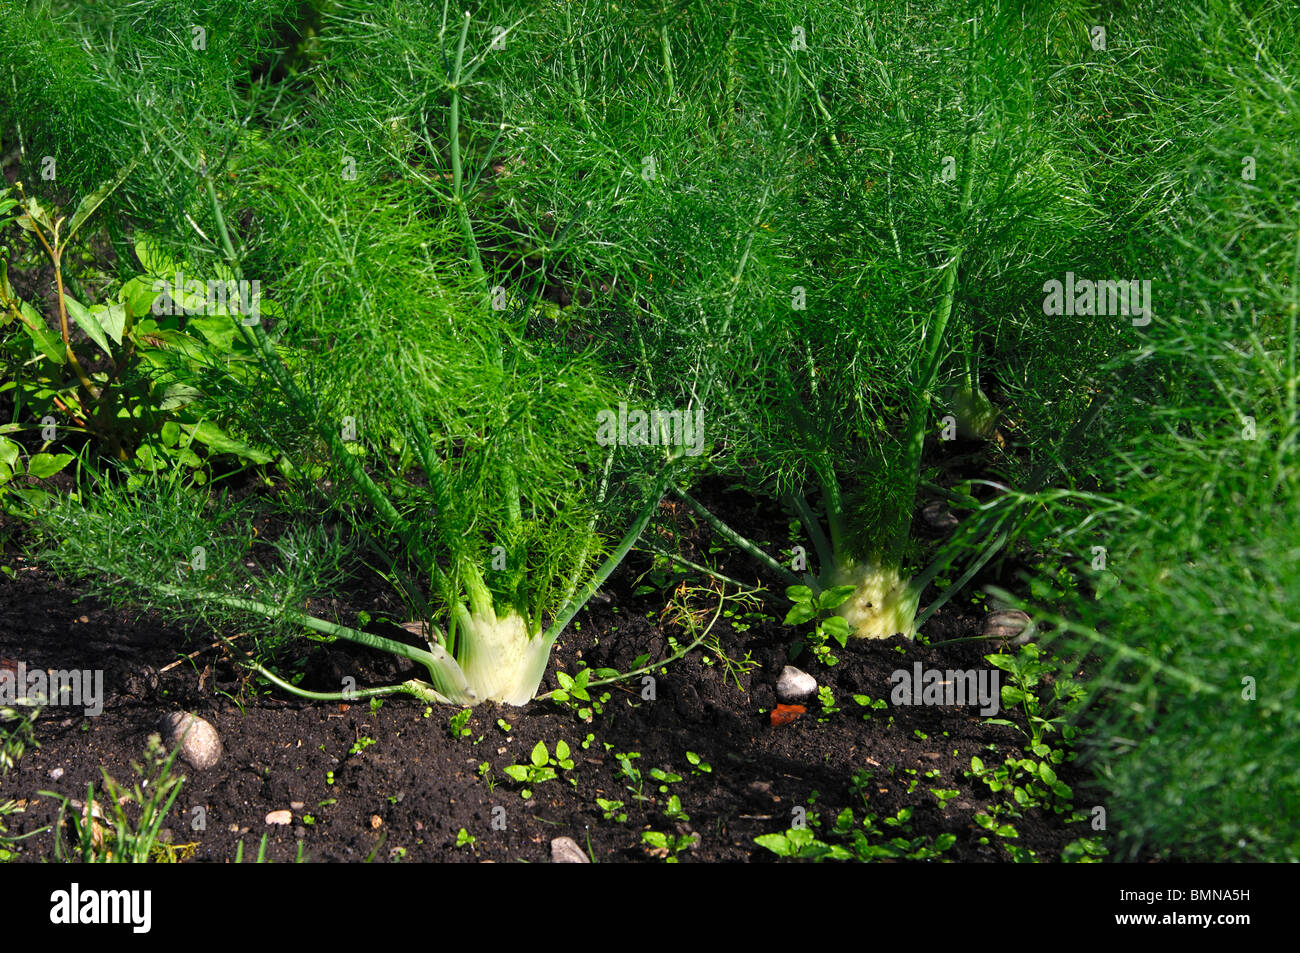 Anbau von Florenz Fenchel, Gemüse-Anbaugebiet grossen Moos, Region Seeland,  Schweiz Stockfotografie - Alamy